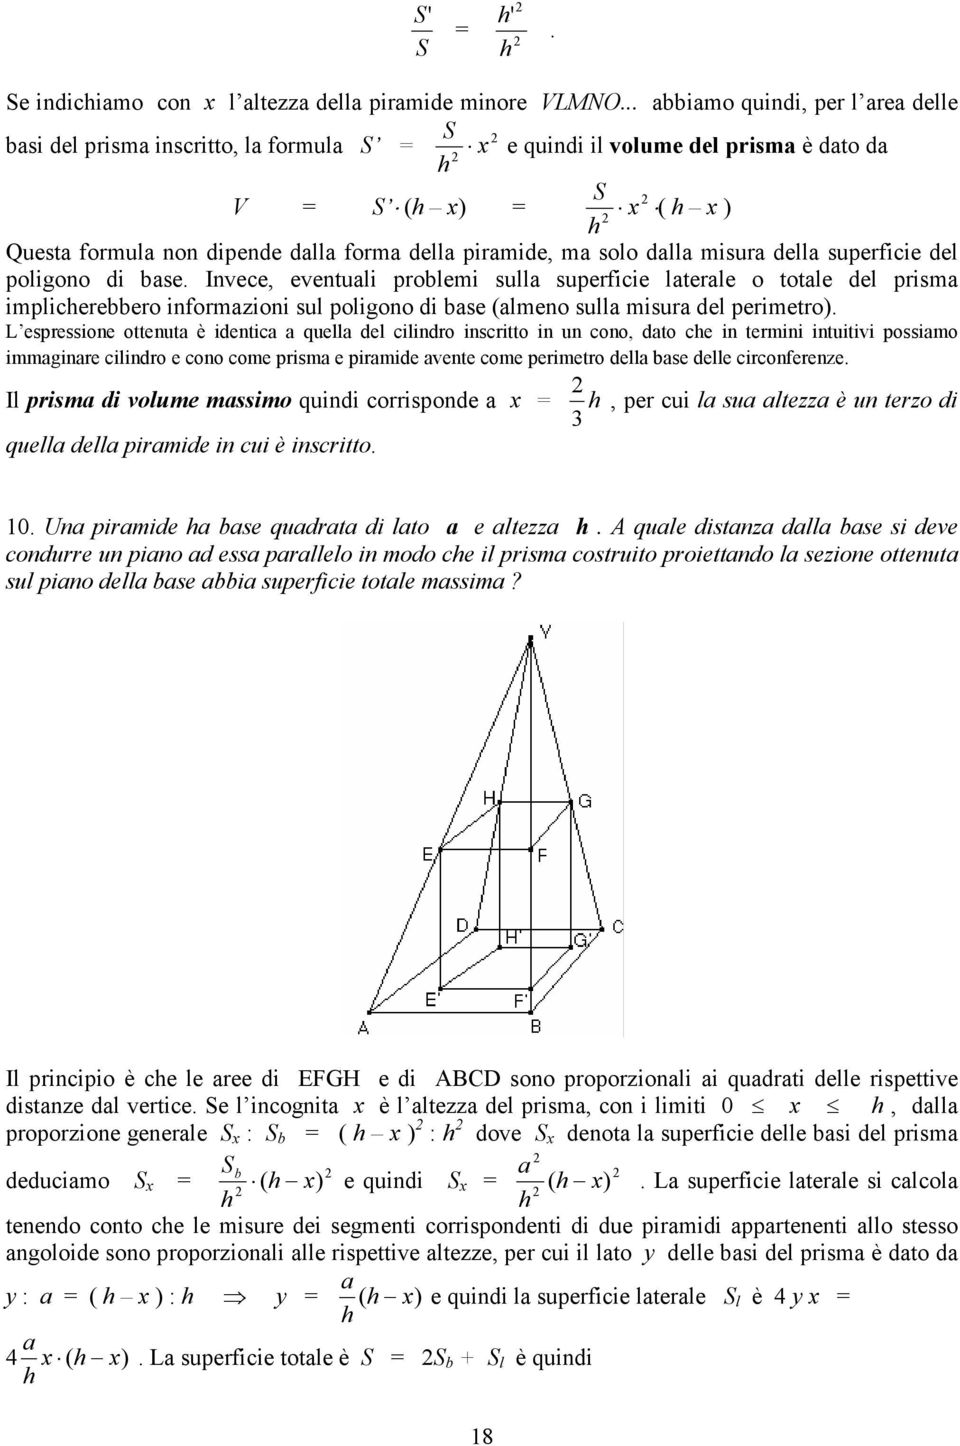 poligono di bse. Invece, eventuli problemi sull superficie lterle o totle del prism implicerebbero informzioni sul poligono di bse (lmeno sull misur del perimetro).